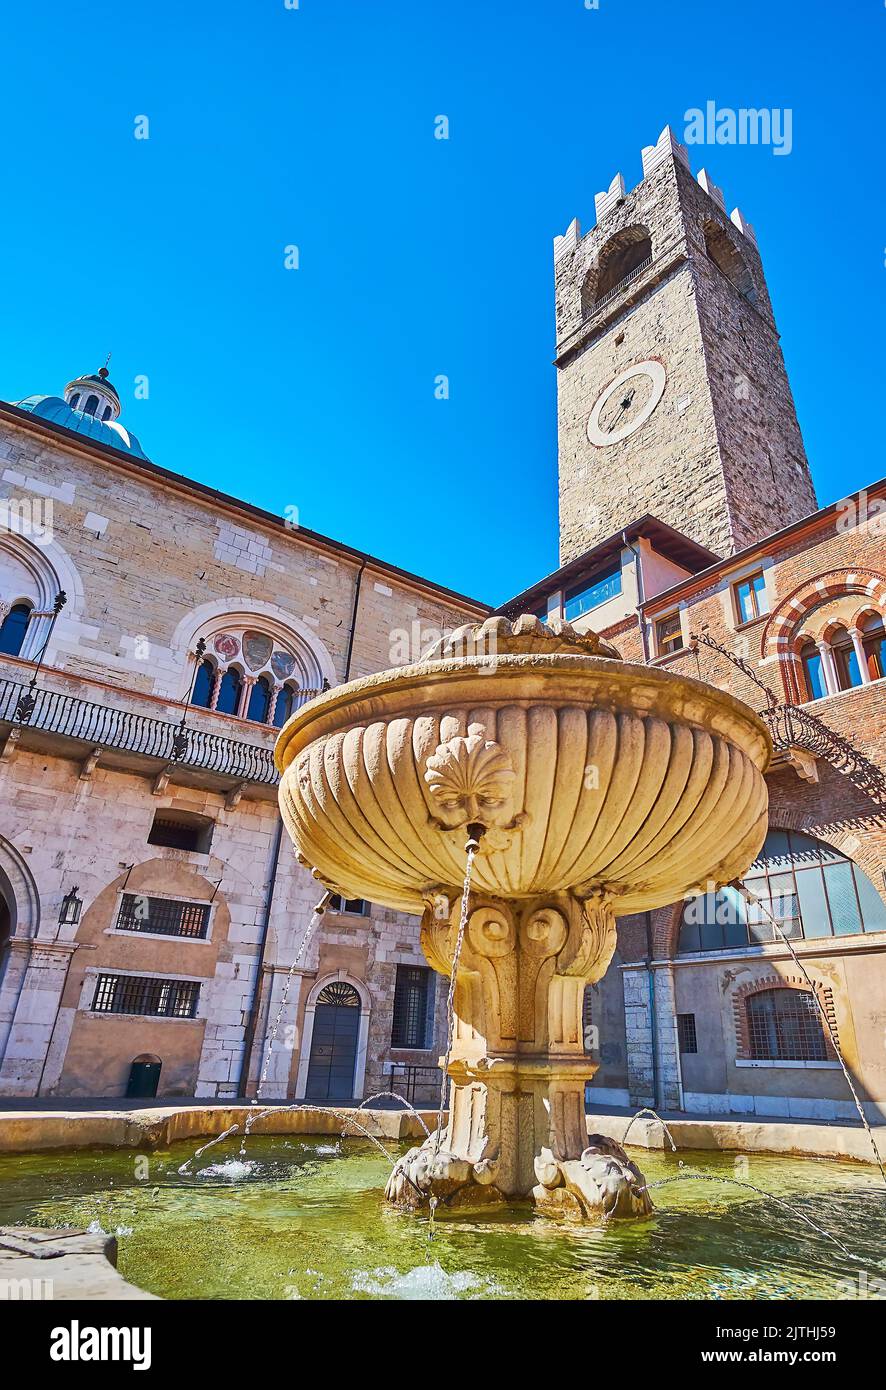 La fontaine médiévale en pierre dans la cour du Palazzo Broletto avec Torre del pegol en arrière-plan, Brescia, Italie Banque D'Images